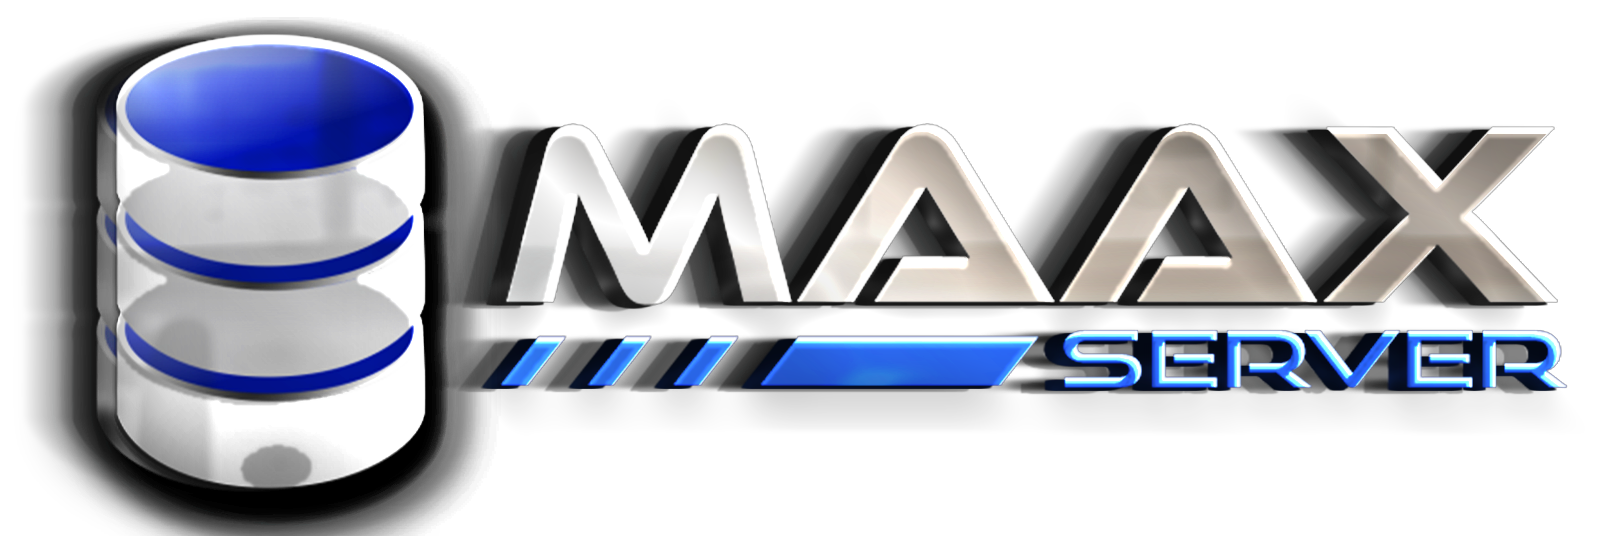 Maax Server